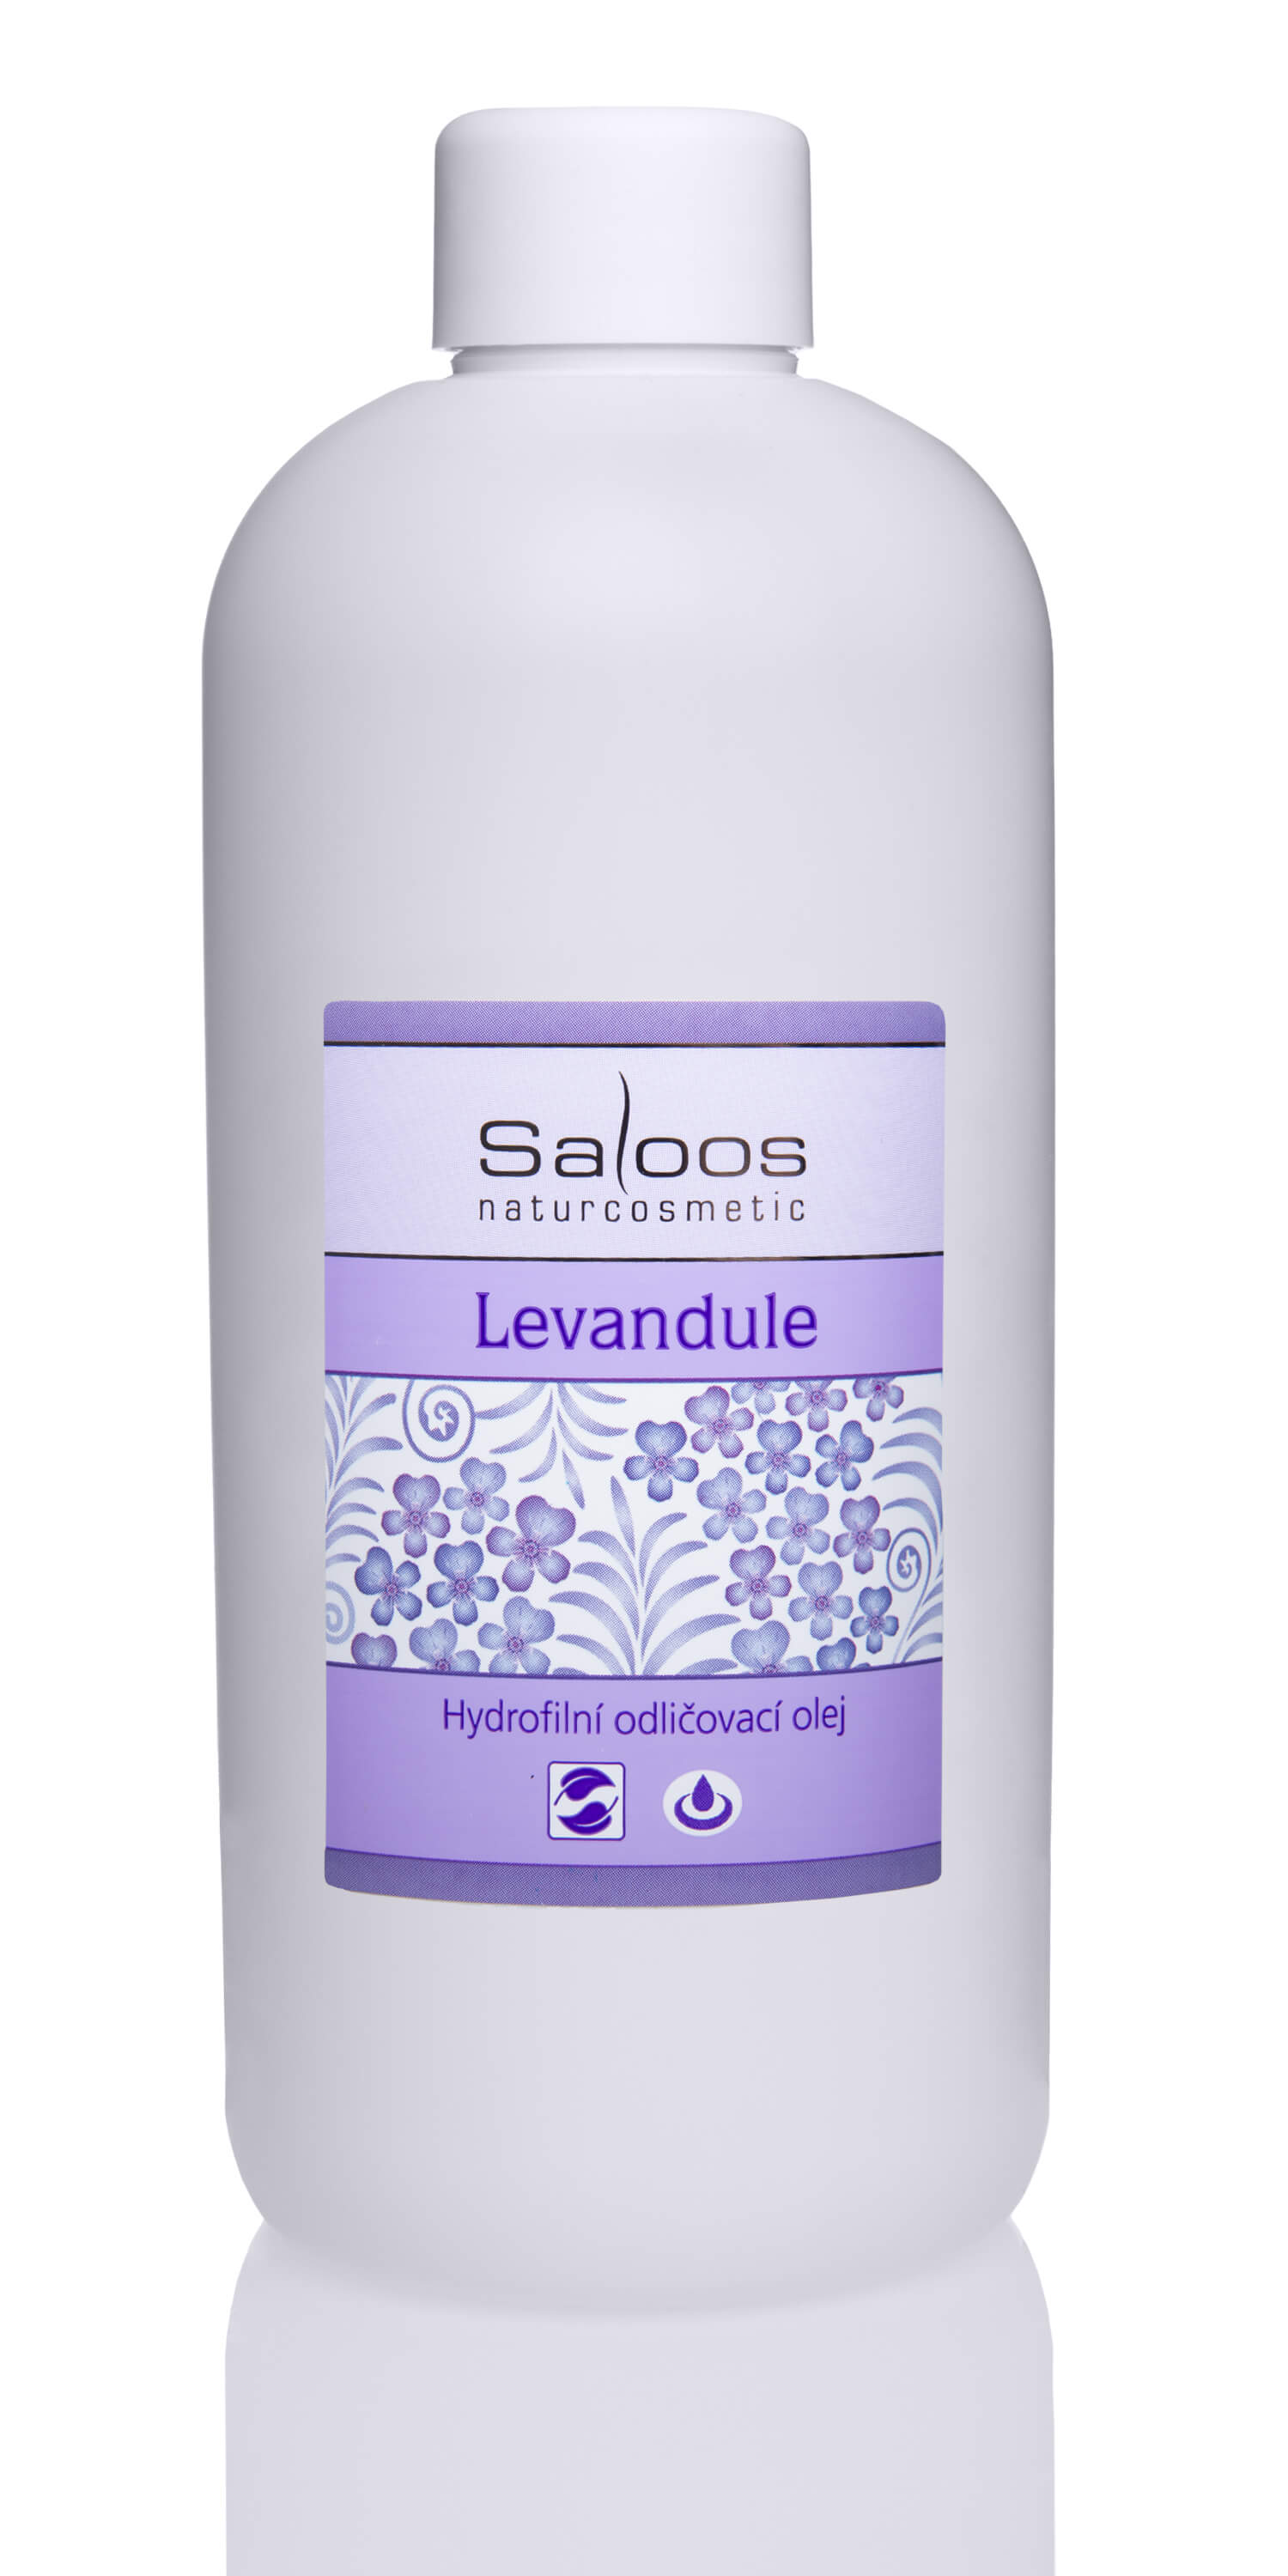 Zobrazit detail výrobku Saloos Hydrofilní odličovací olej - Levandule 250 ml + 2 měsíce na vrácení zboží